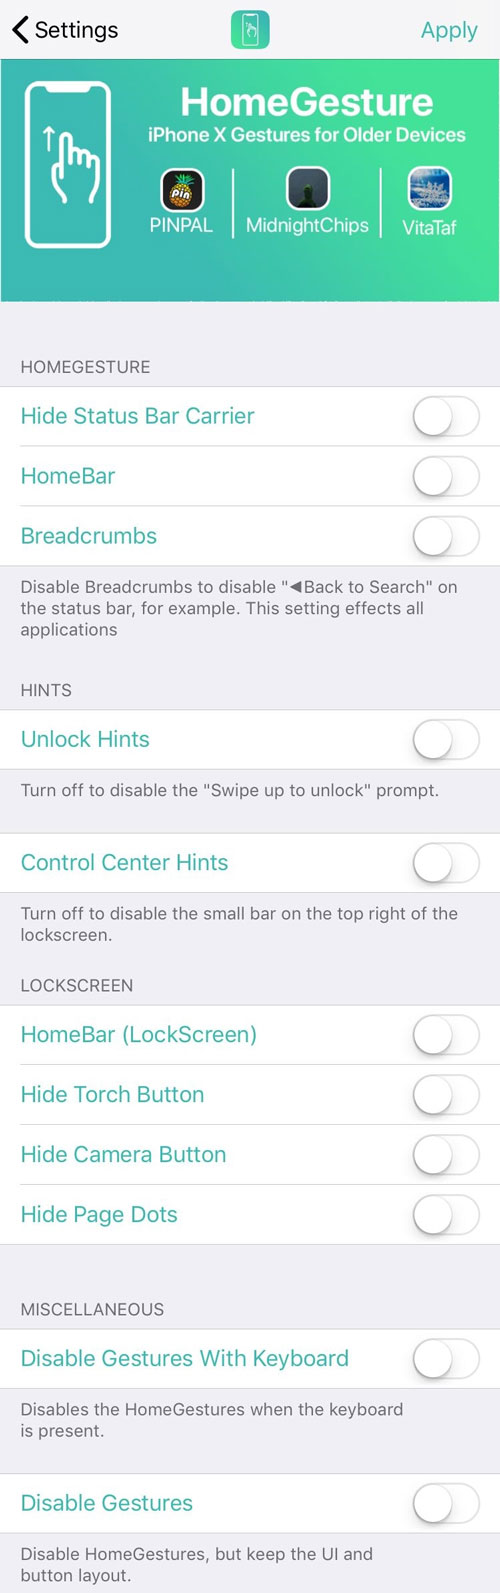 HomeGesture: Tinh
chỉnh giúp mang thao tác điều hướng của iPhone X lên tất cả
thiết bị iPhone khác